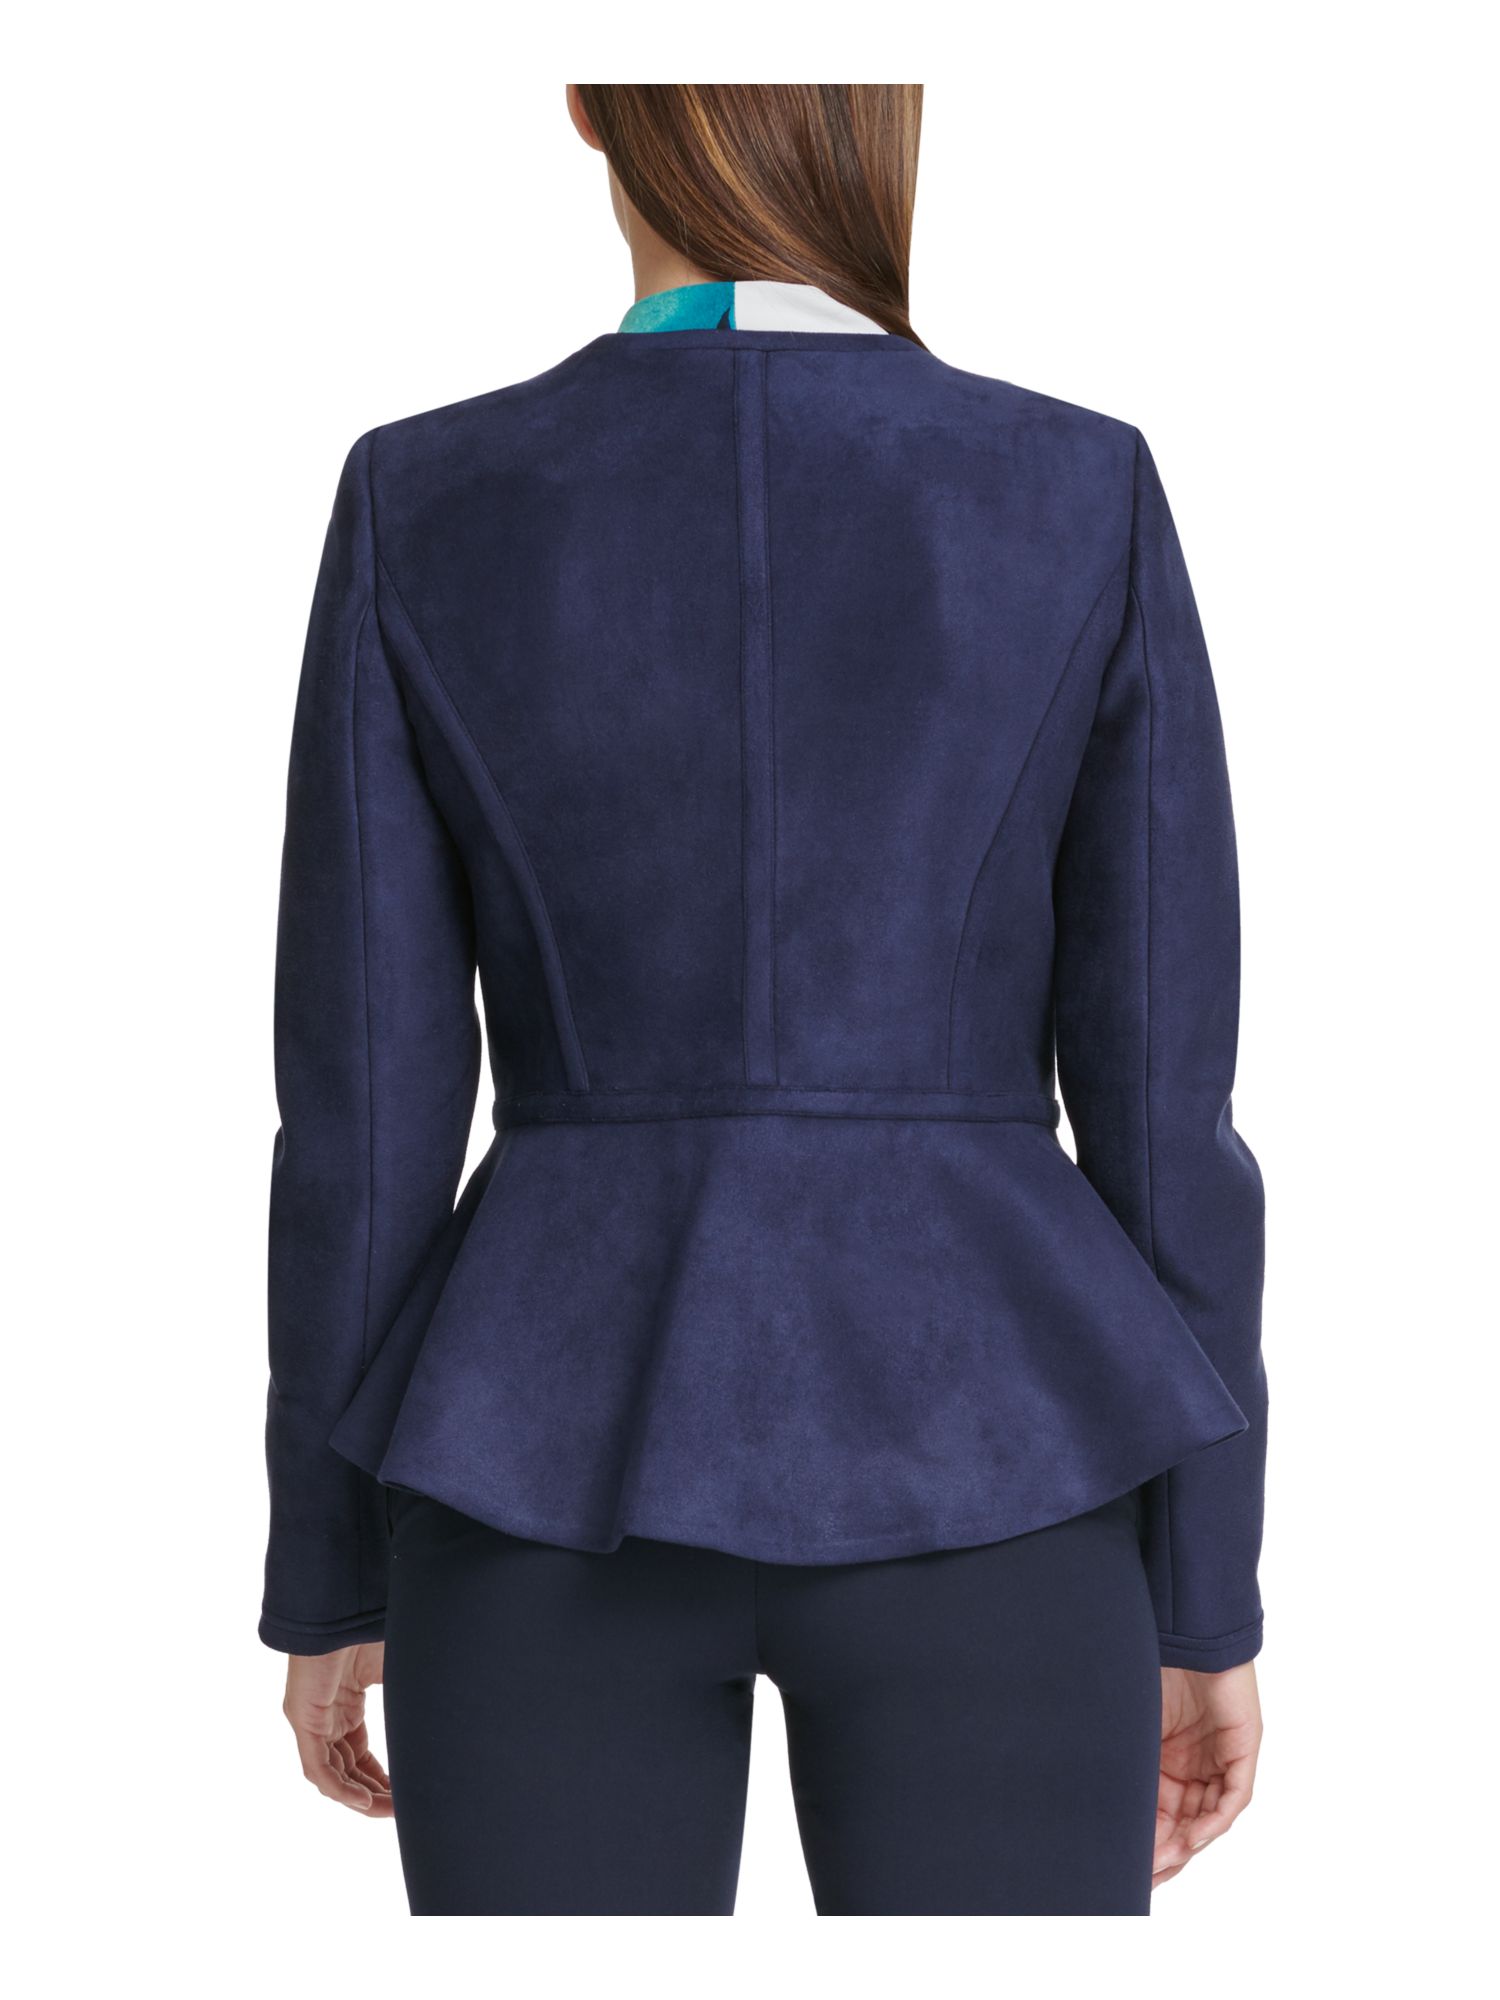 DKNY Women's Faux Suede Lightweight Peplum Jacket Blue Size 4